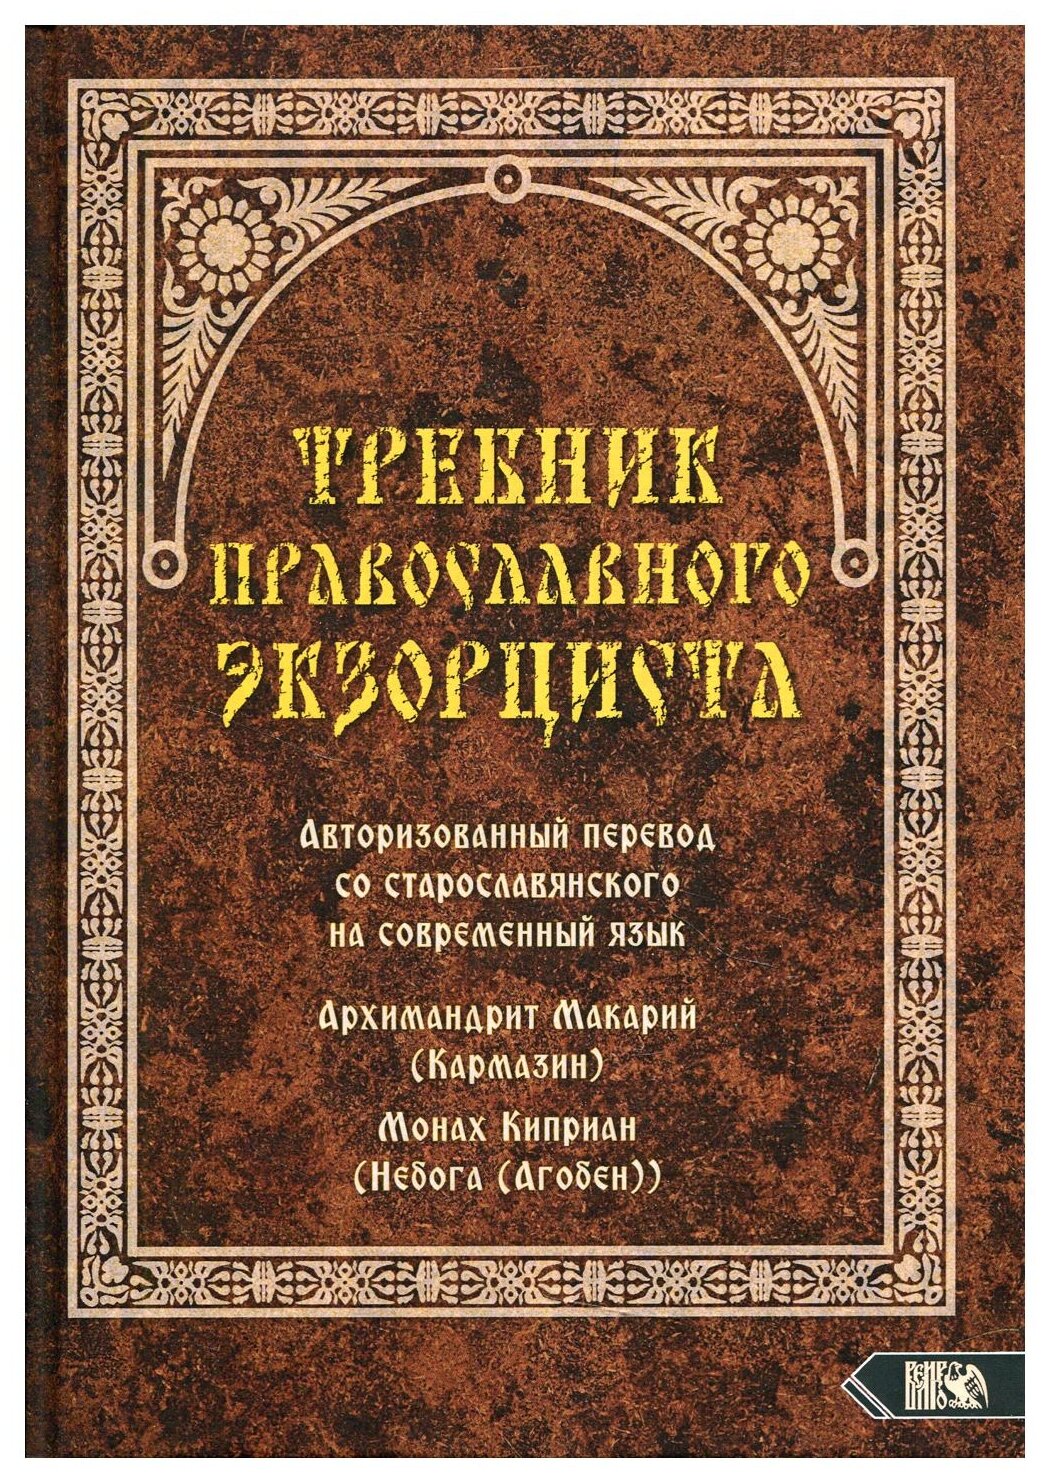 Требник православного экзорциста - фото №1